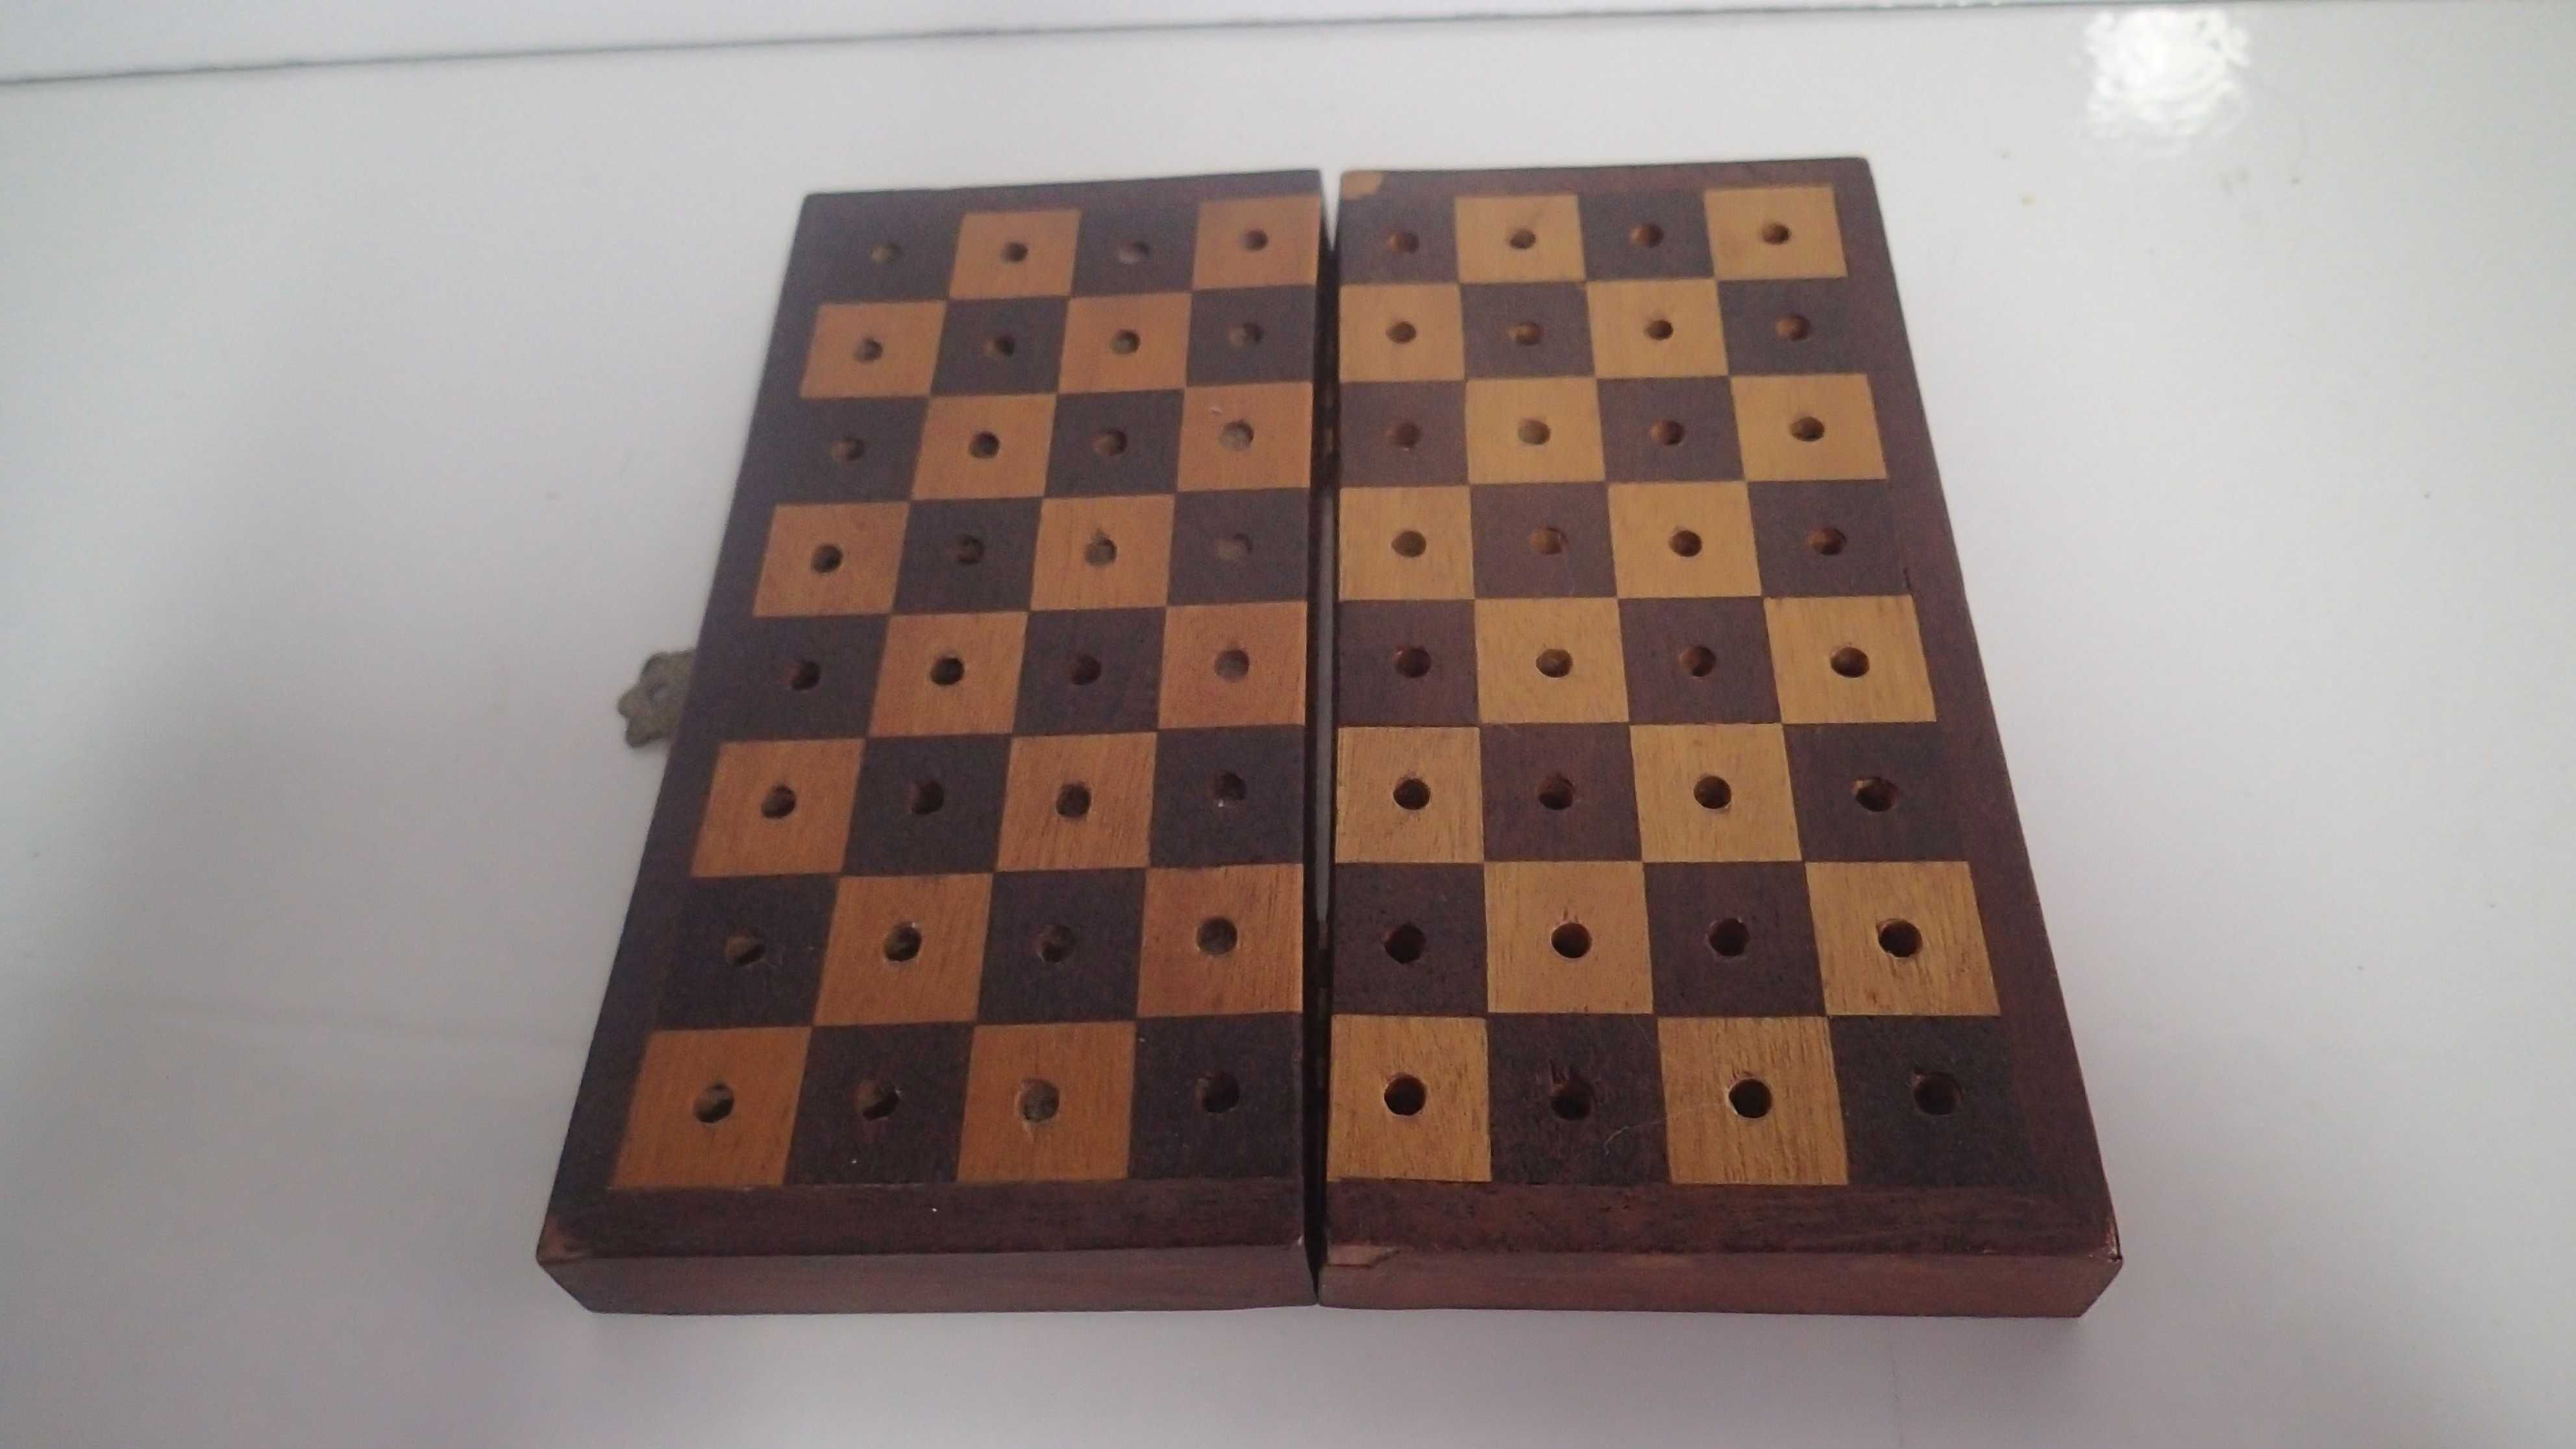 Caixa e peças de xadrez antigas em madeira